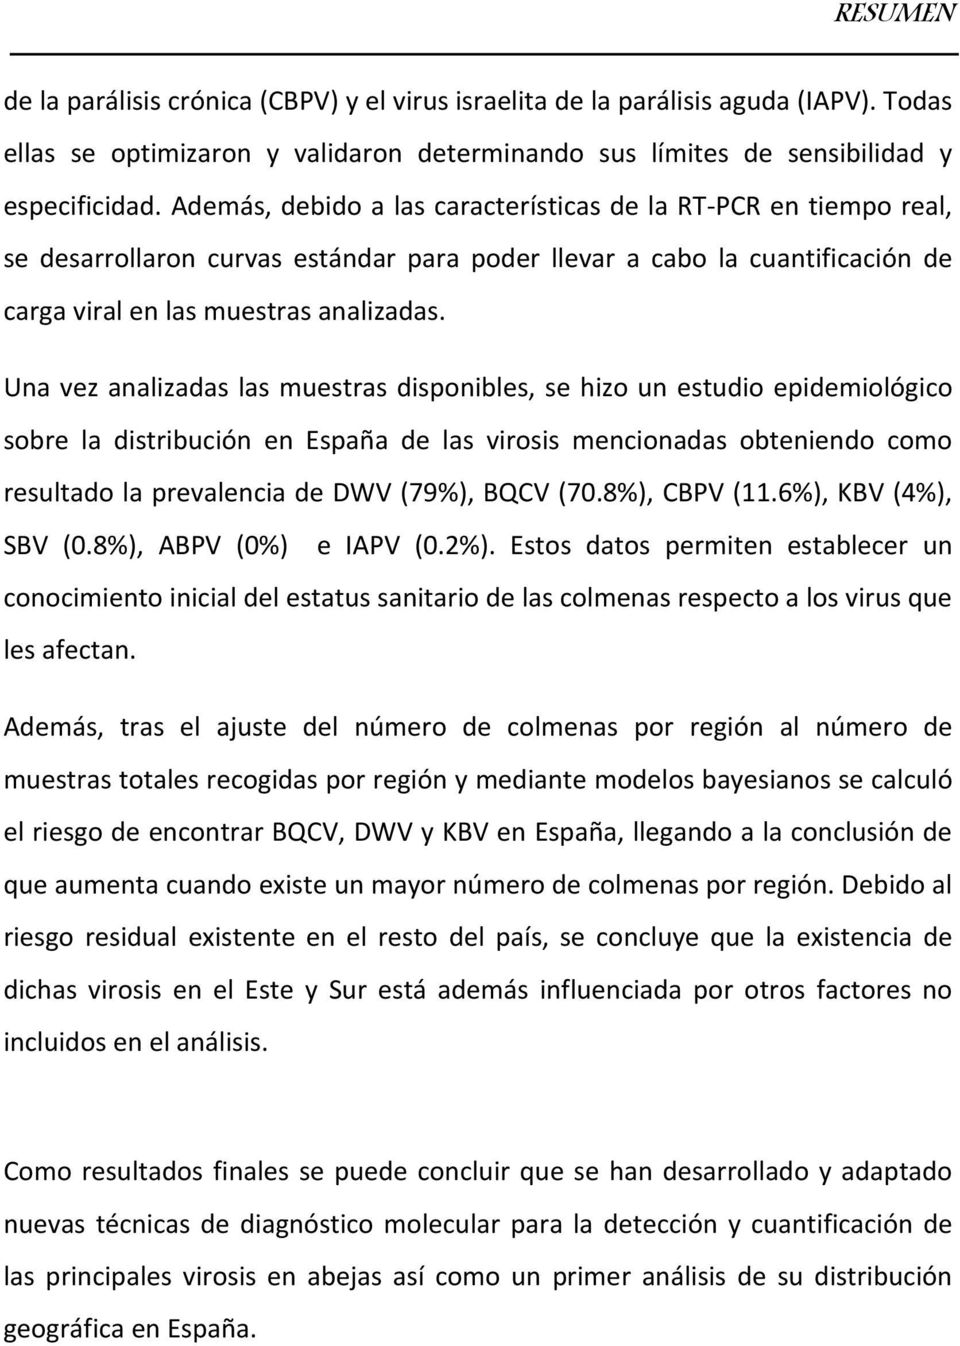 Una vez analizadas las muestras disponibles, se hizo un estudio epidemiológico sobre la distribución en España de las virosis mencionadas obteniendo como resultado la prevalencia de DWV (79%), BQCV